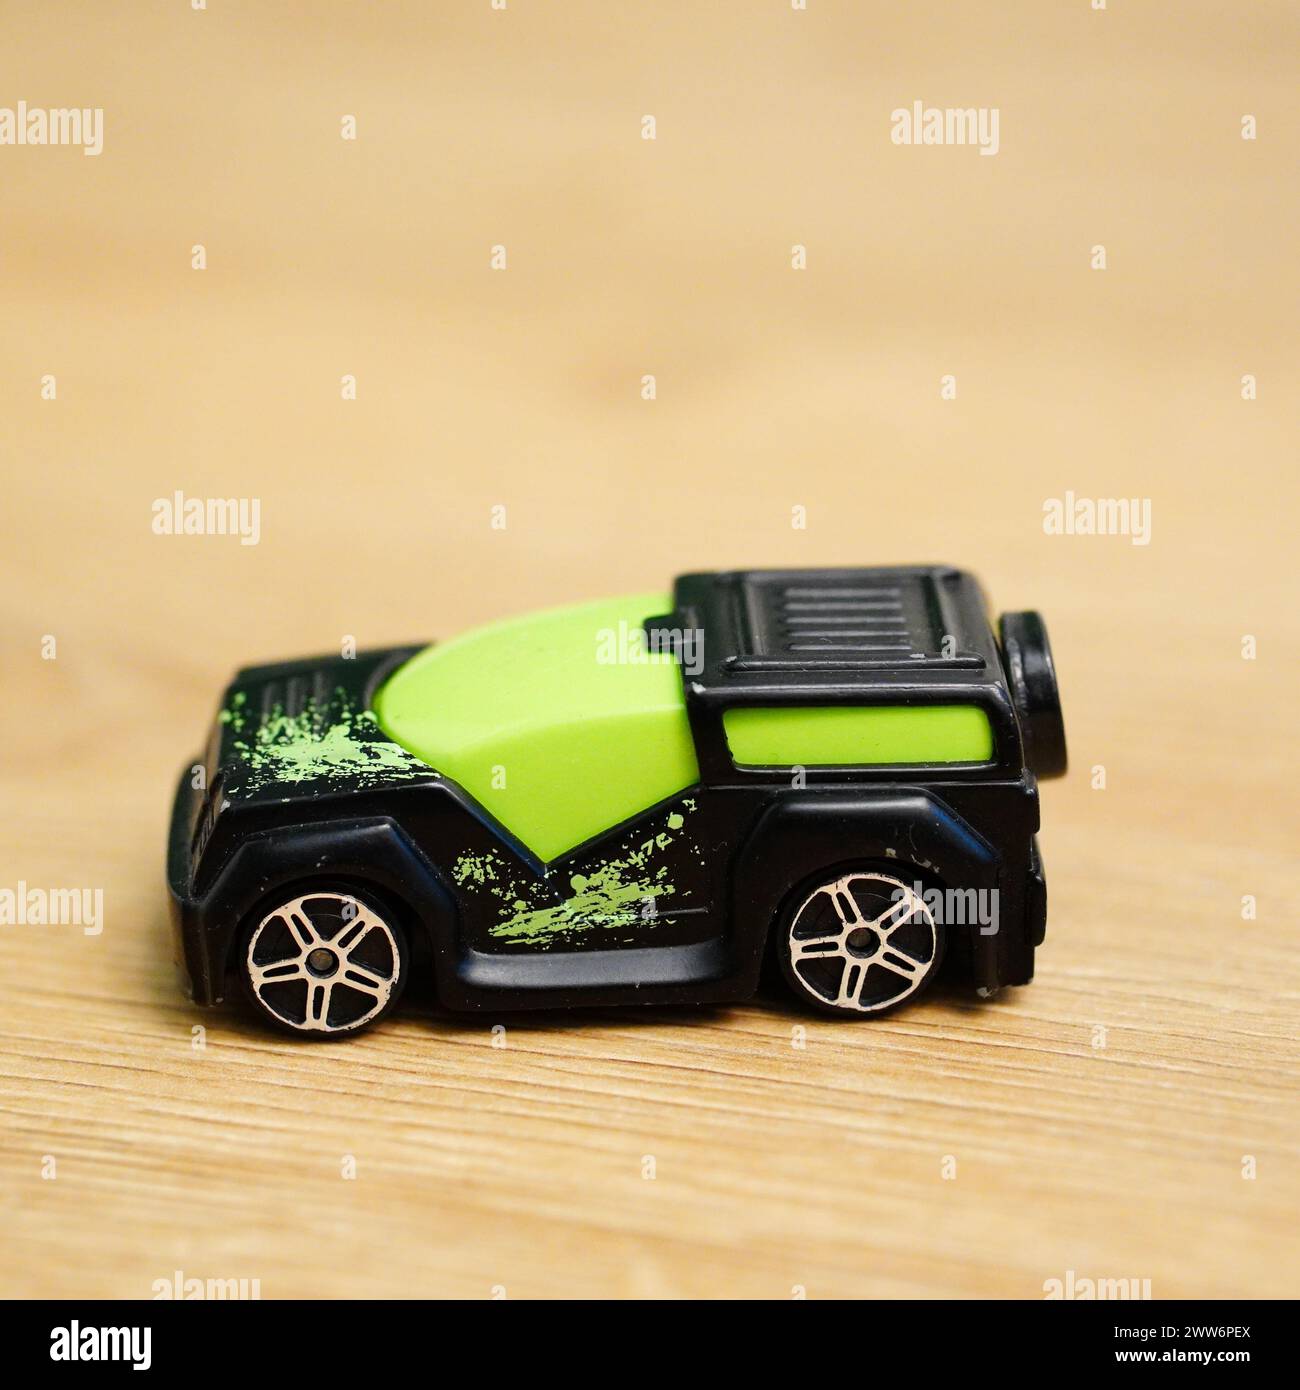 Ein grünes und schwarzes Spielzeugauto auf einer Holzoberfläche Stockfoto